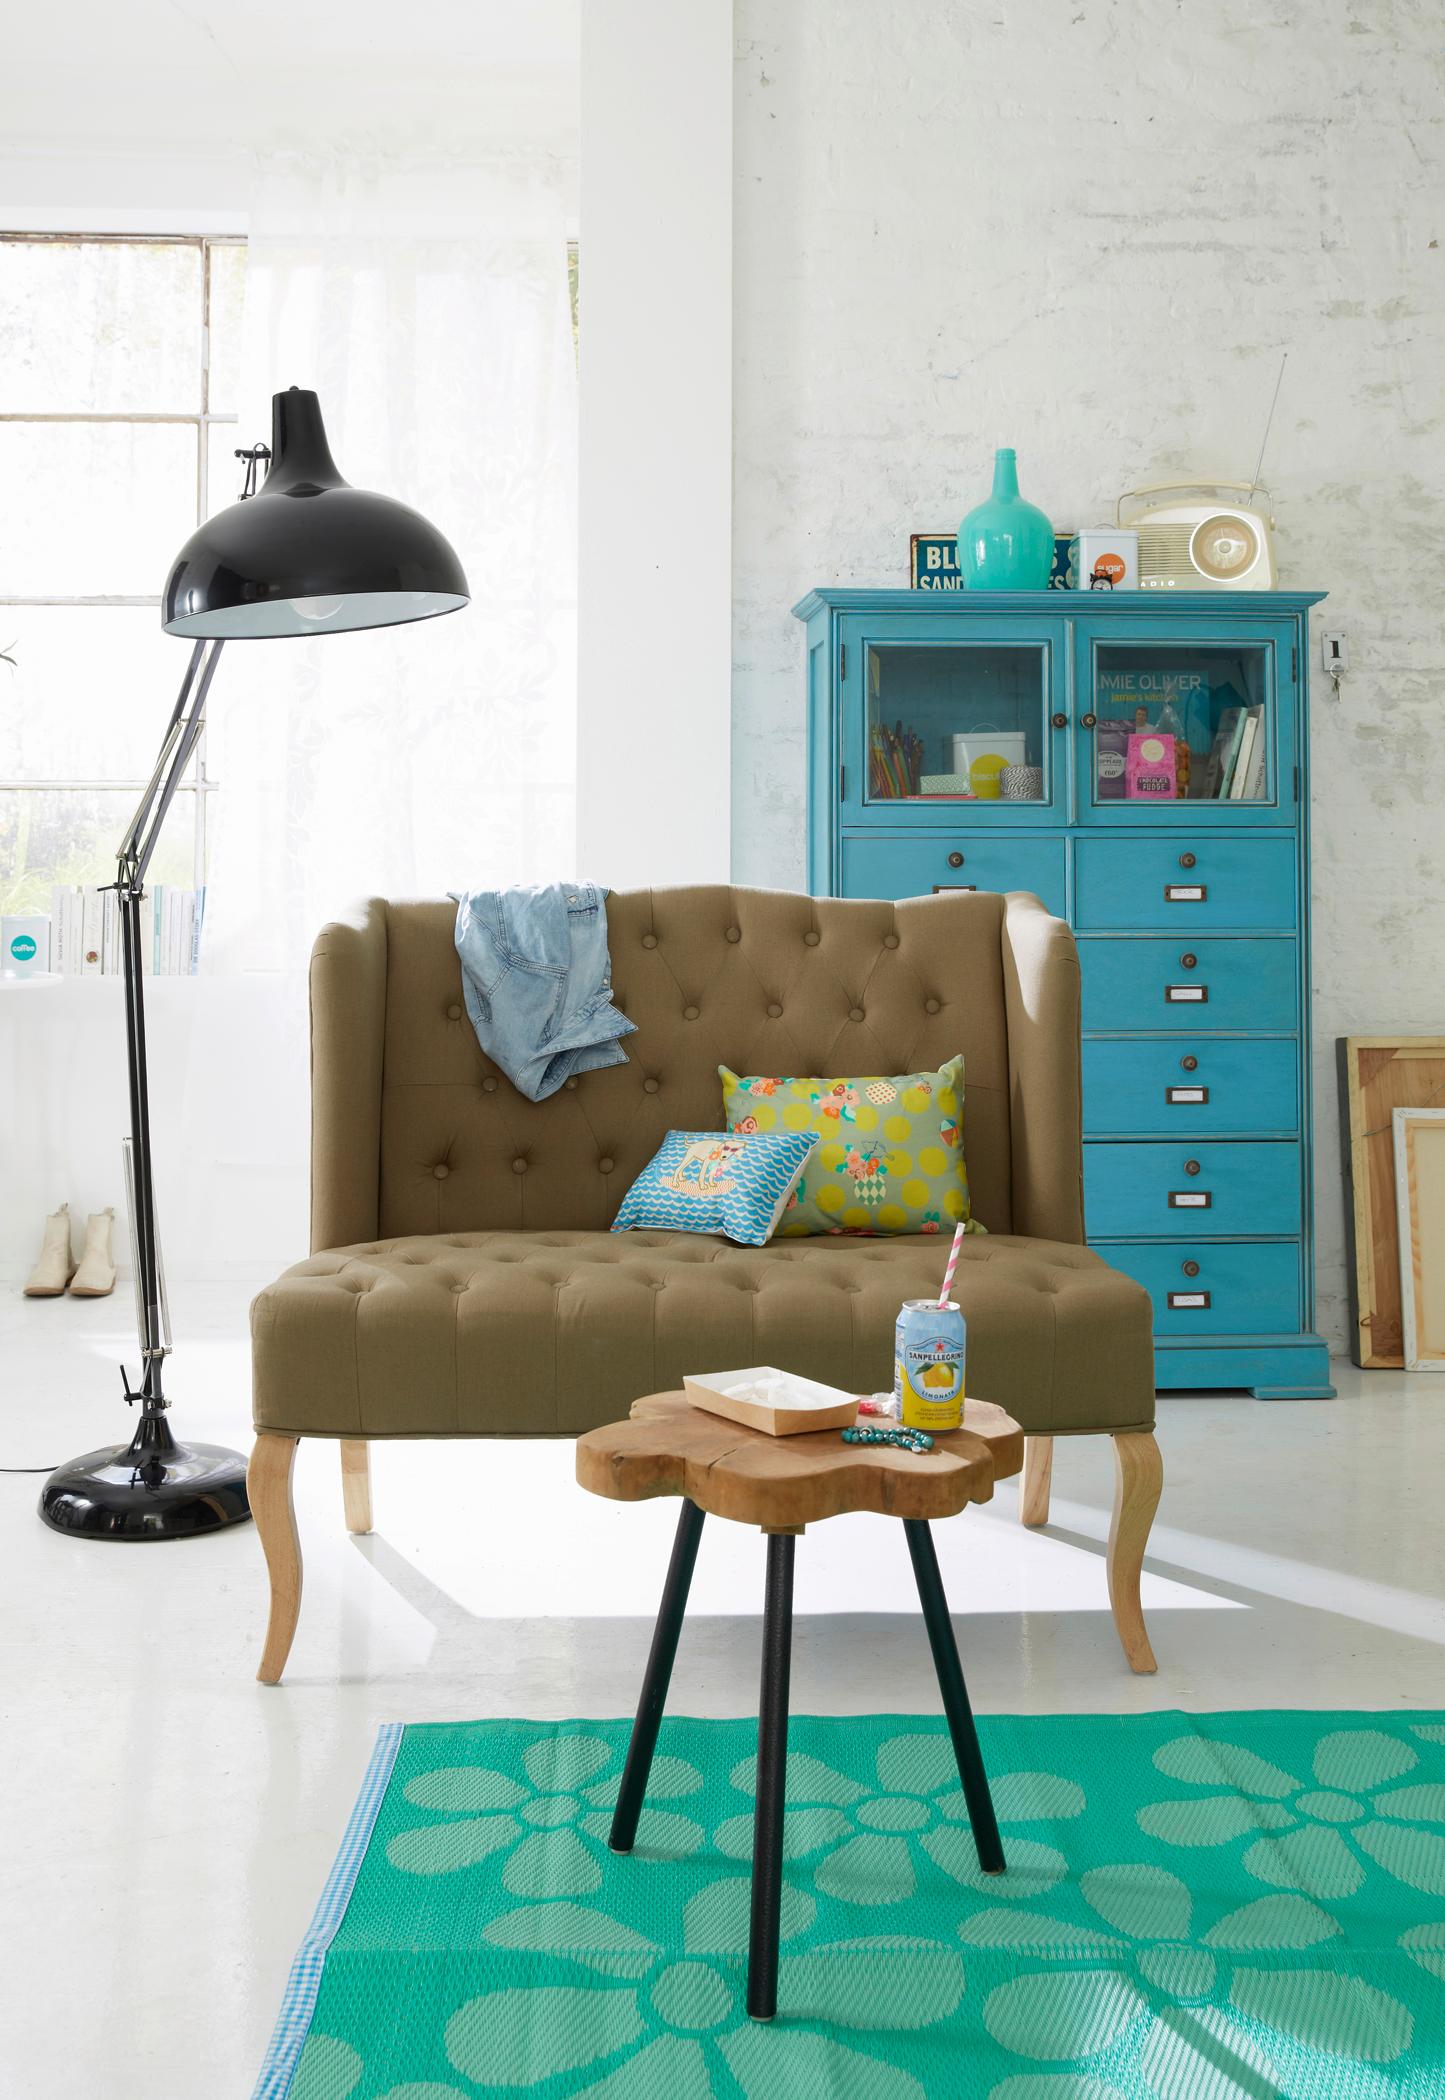 Zweisitzer mit Holzfüßen #beistelltisch #wohnzimmer #stehlampe #türkisfarbenerteppich ©car Selbstbaumöbel